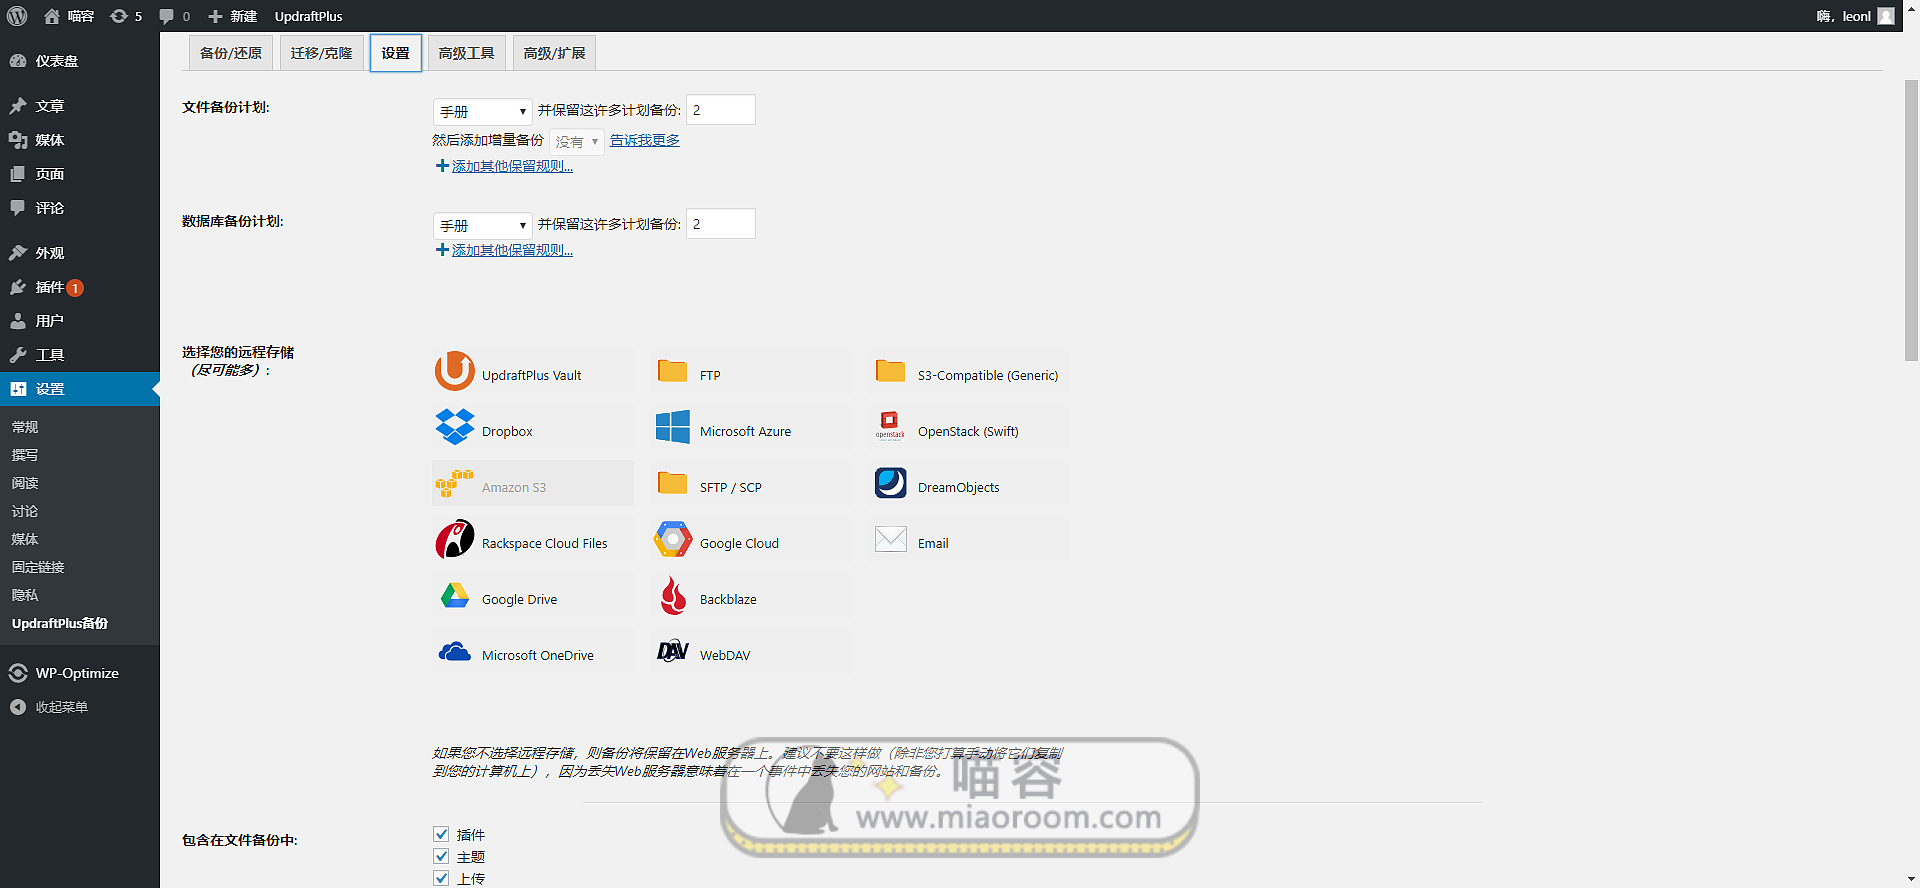 「WP插件」 备份插件 UpdraftPlus Premium v2.16.22.24 专业版+破解+中文汉化【已更新】